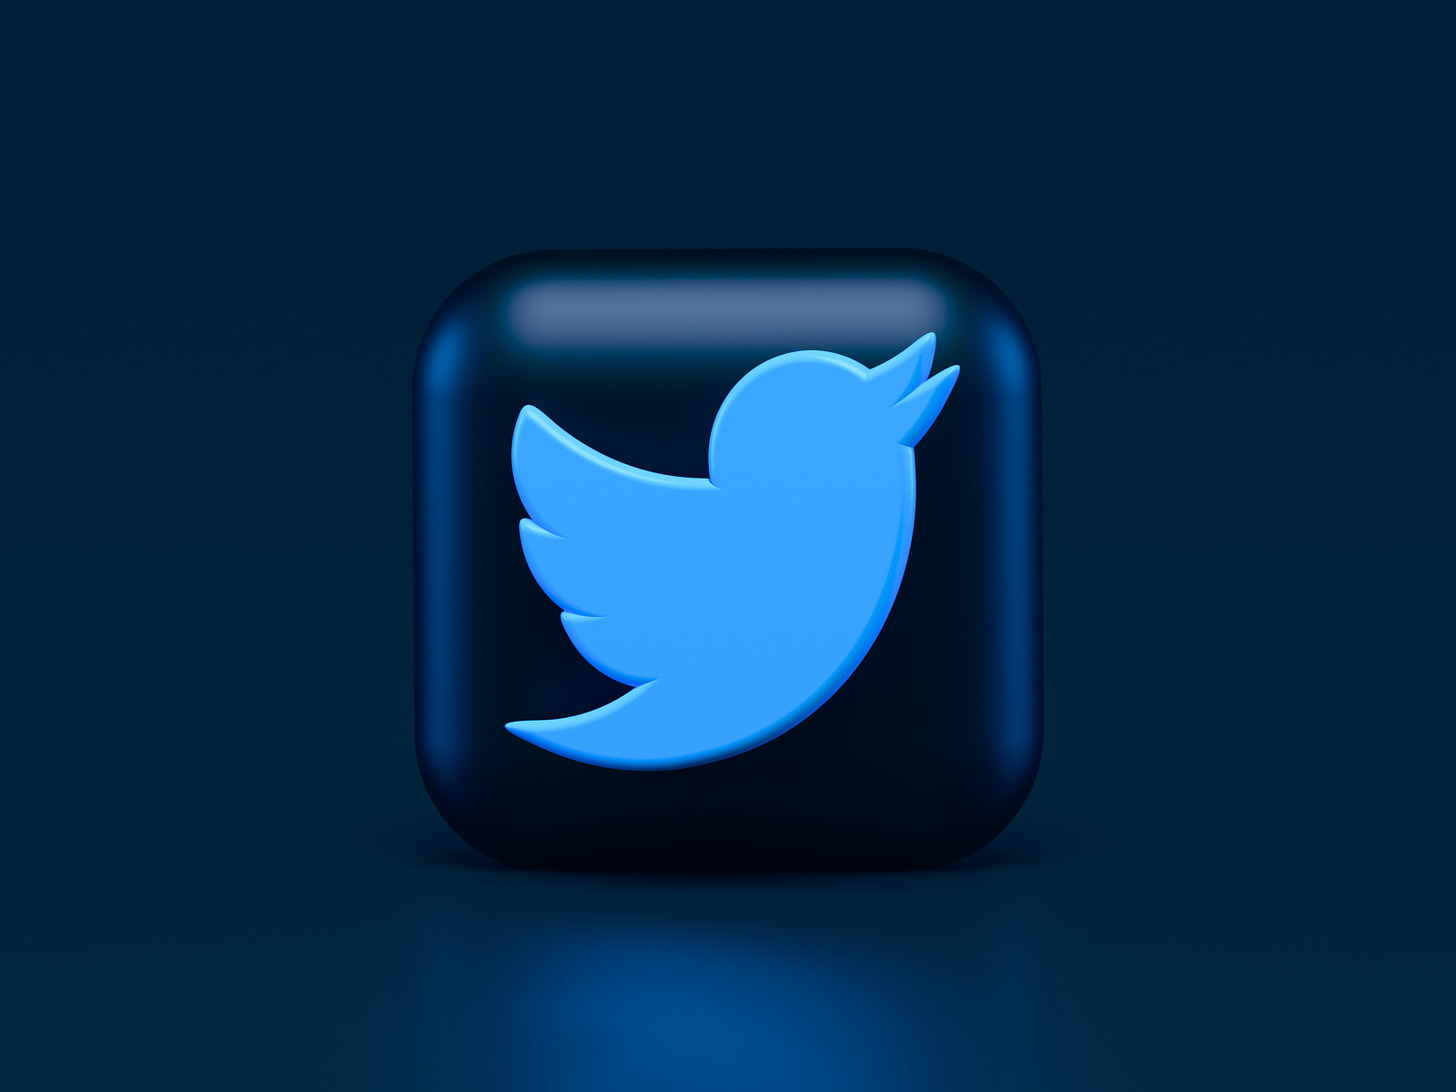 twitter bird on a button against a dark blue background.